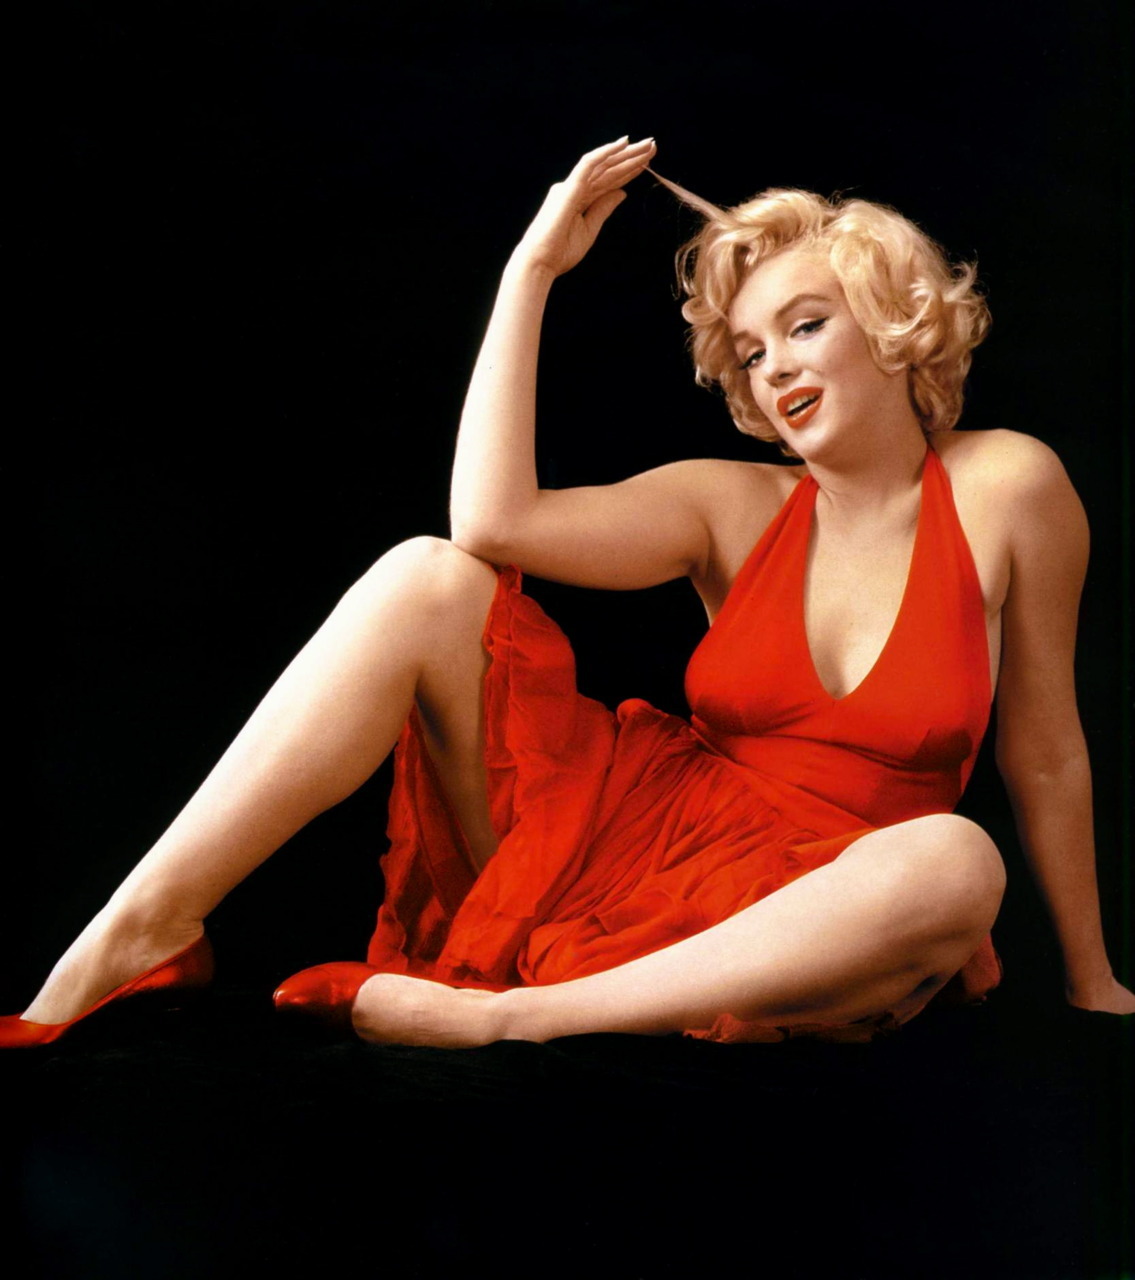 Marilyn monroe body size